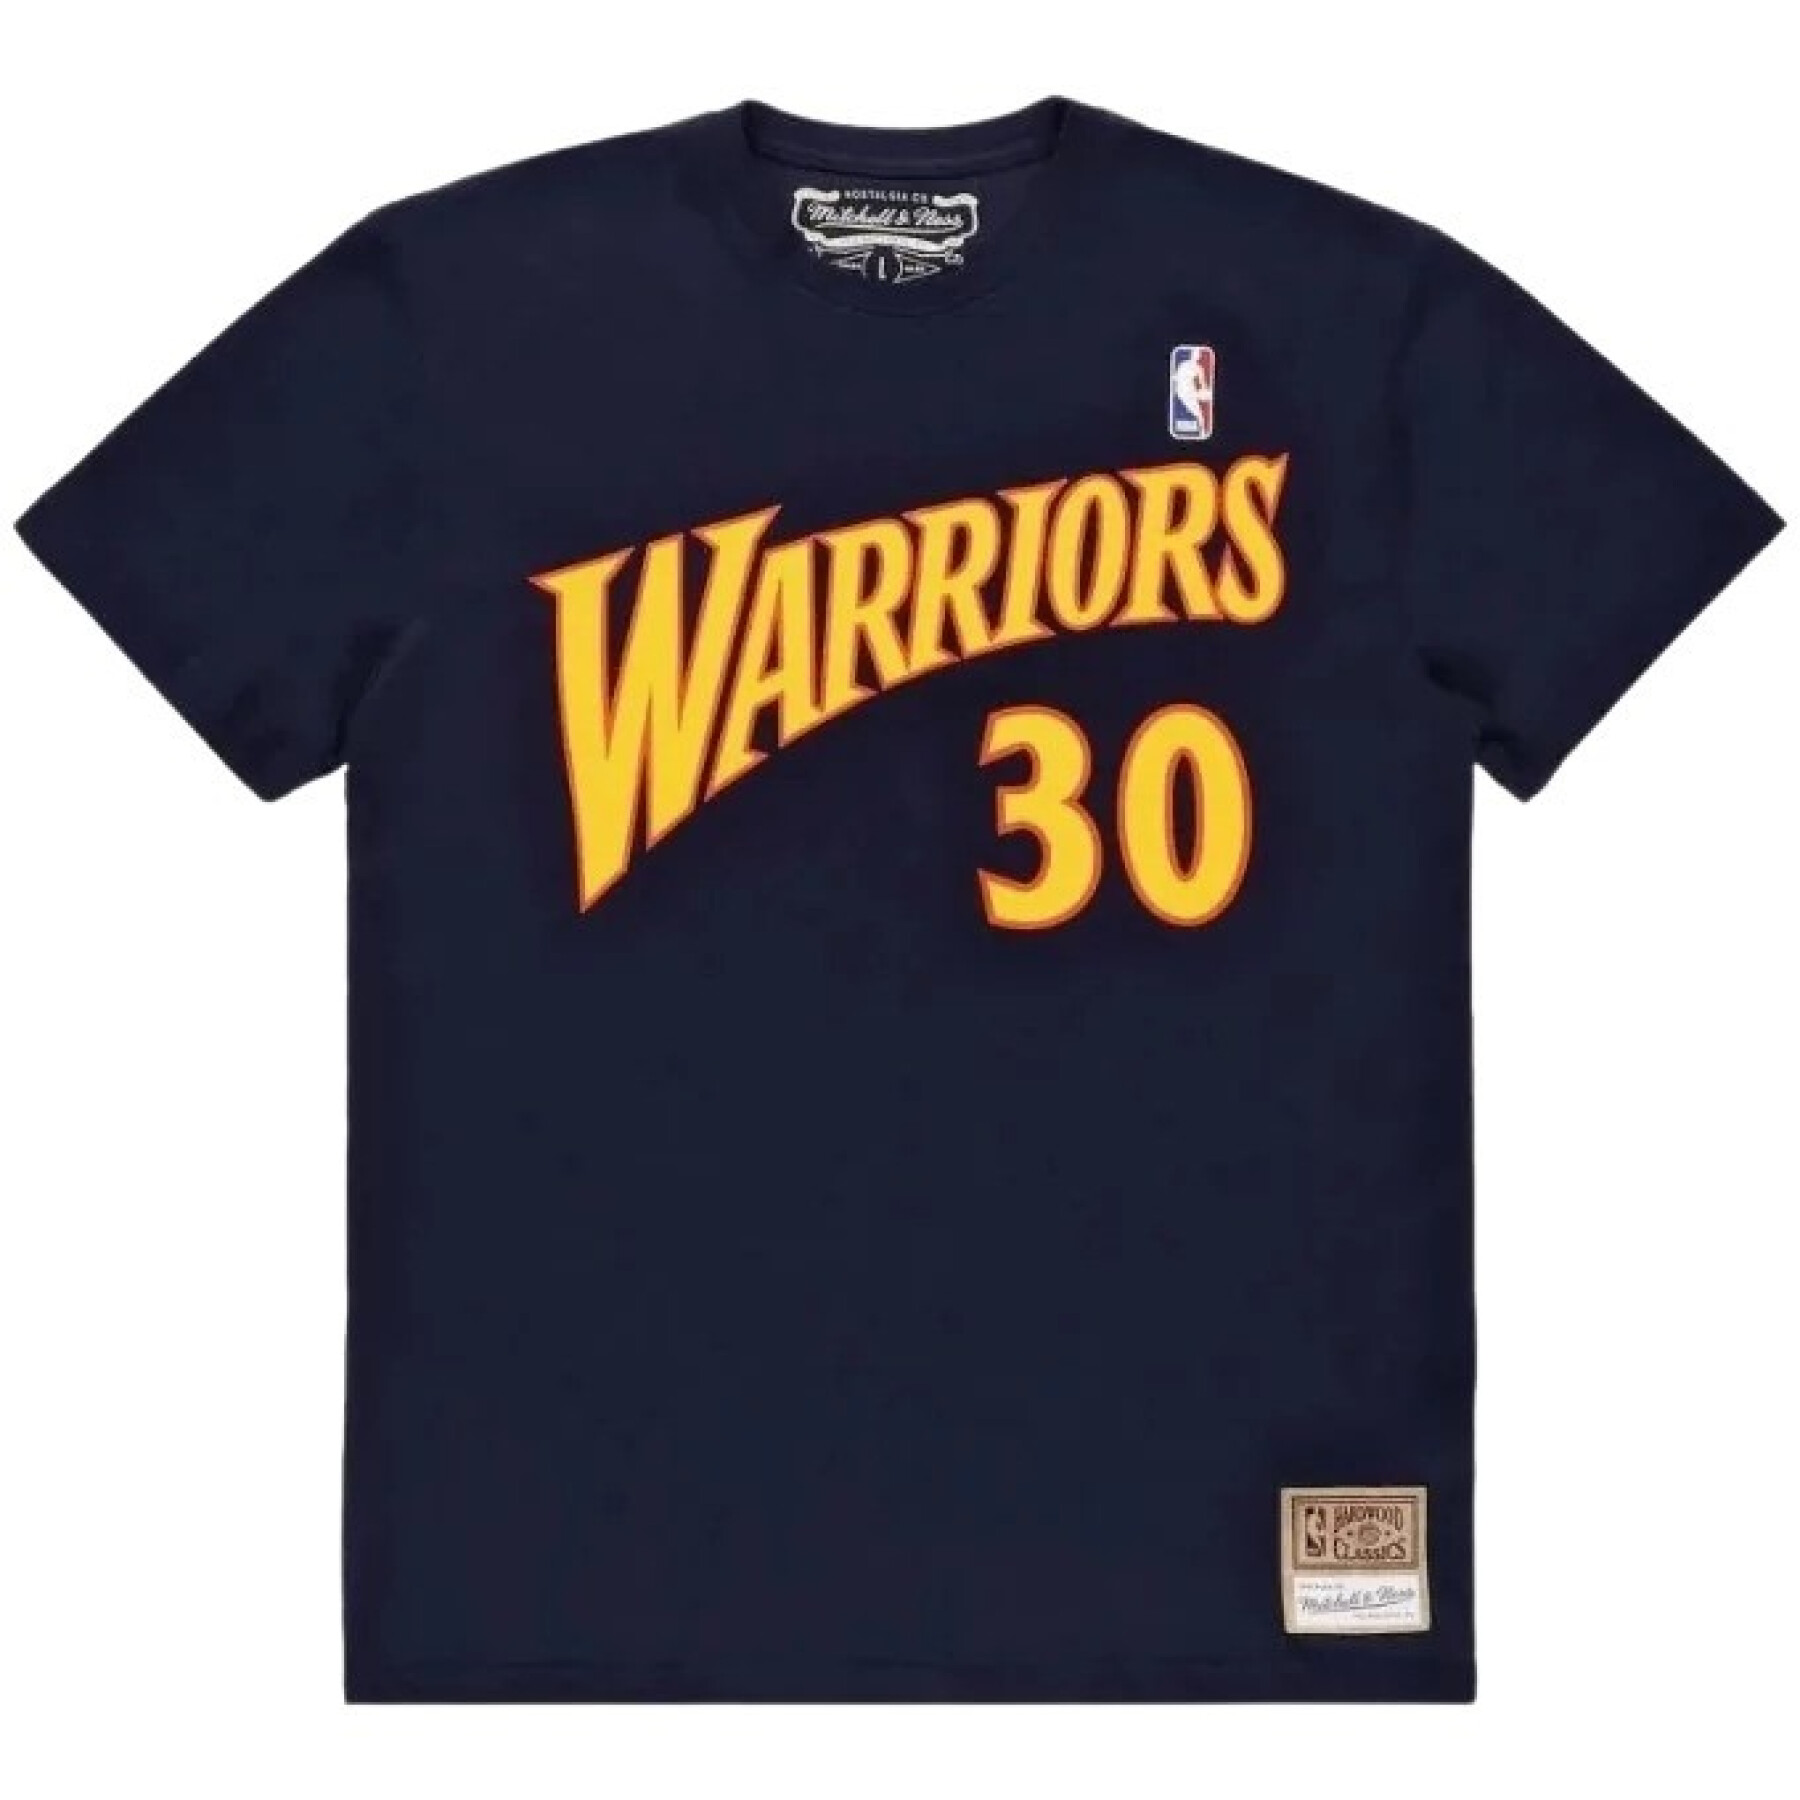 T-shirt Golden State Warriors